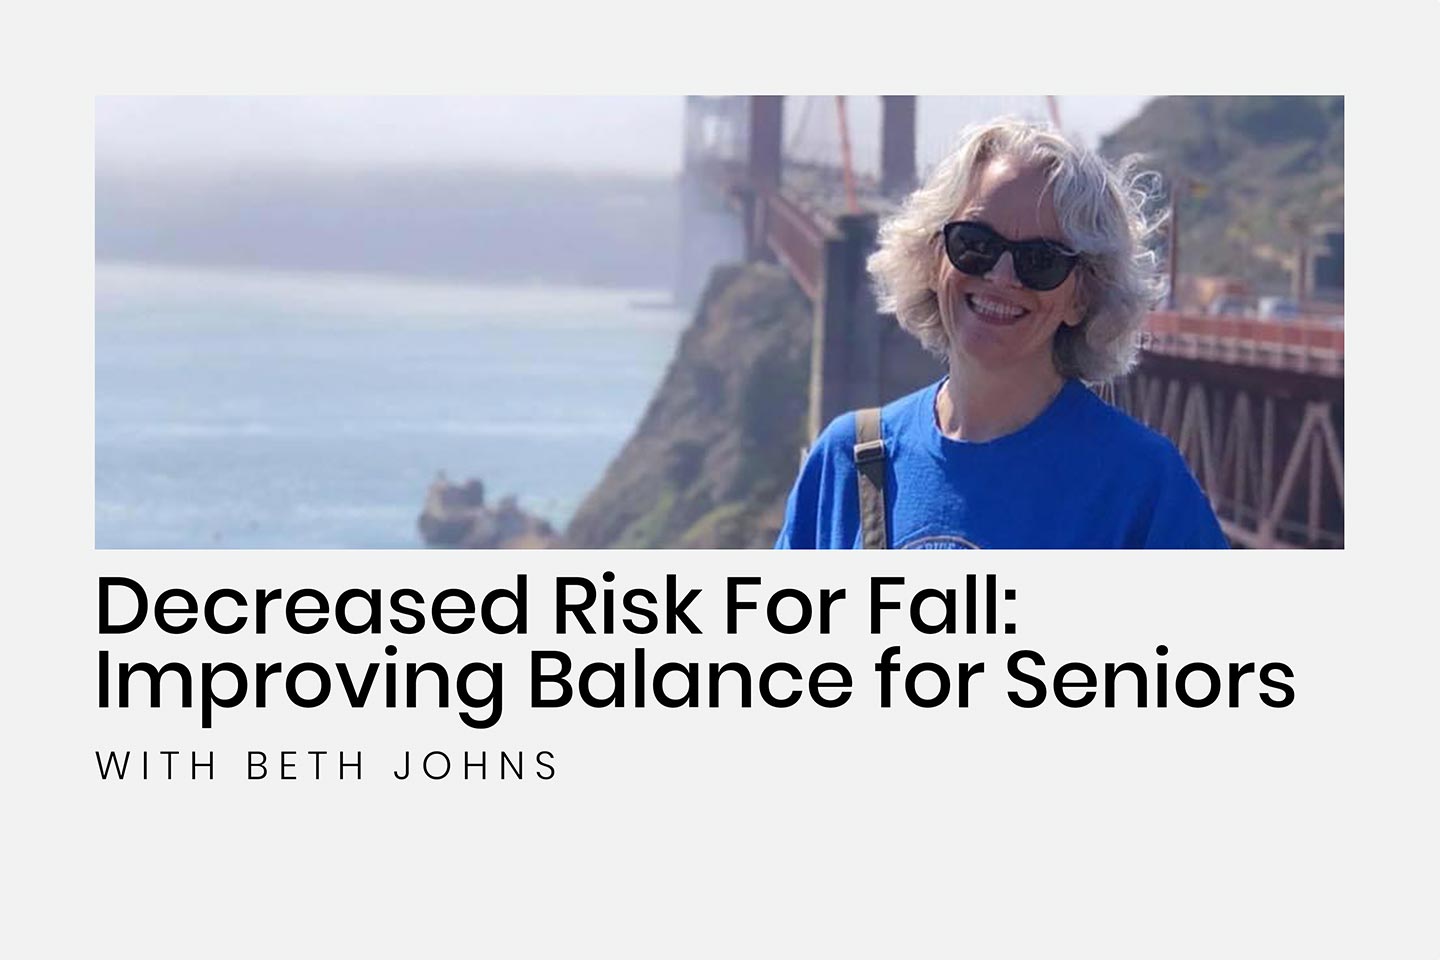 Decreased Risk For Fall: Improving Balance for Seniors